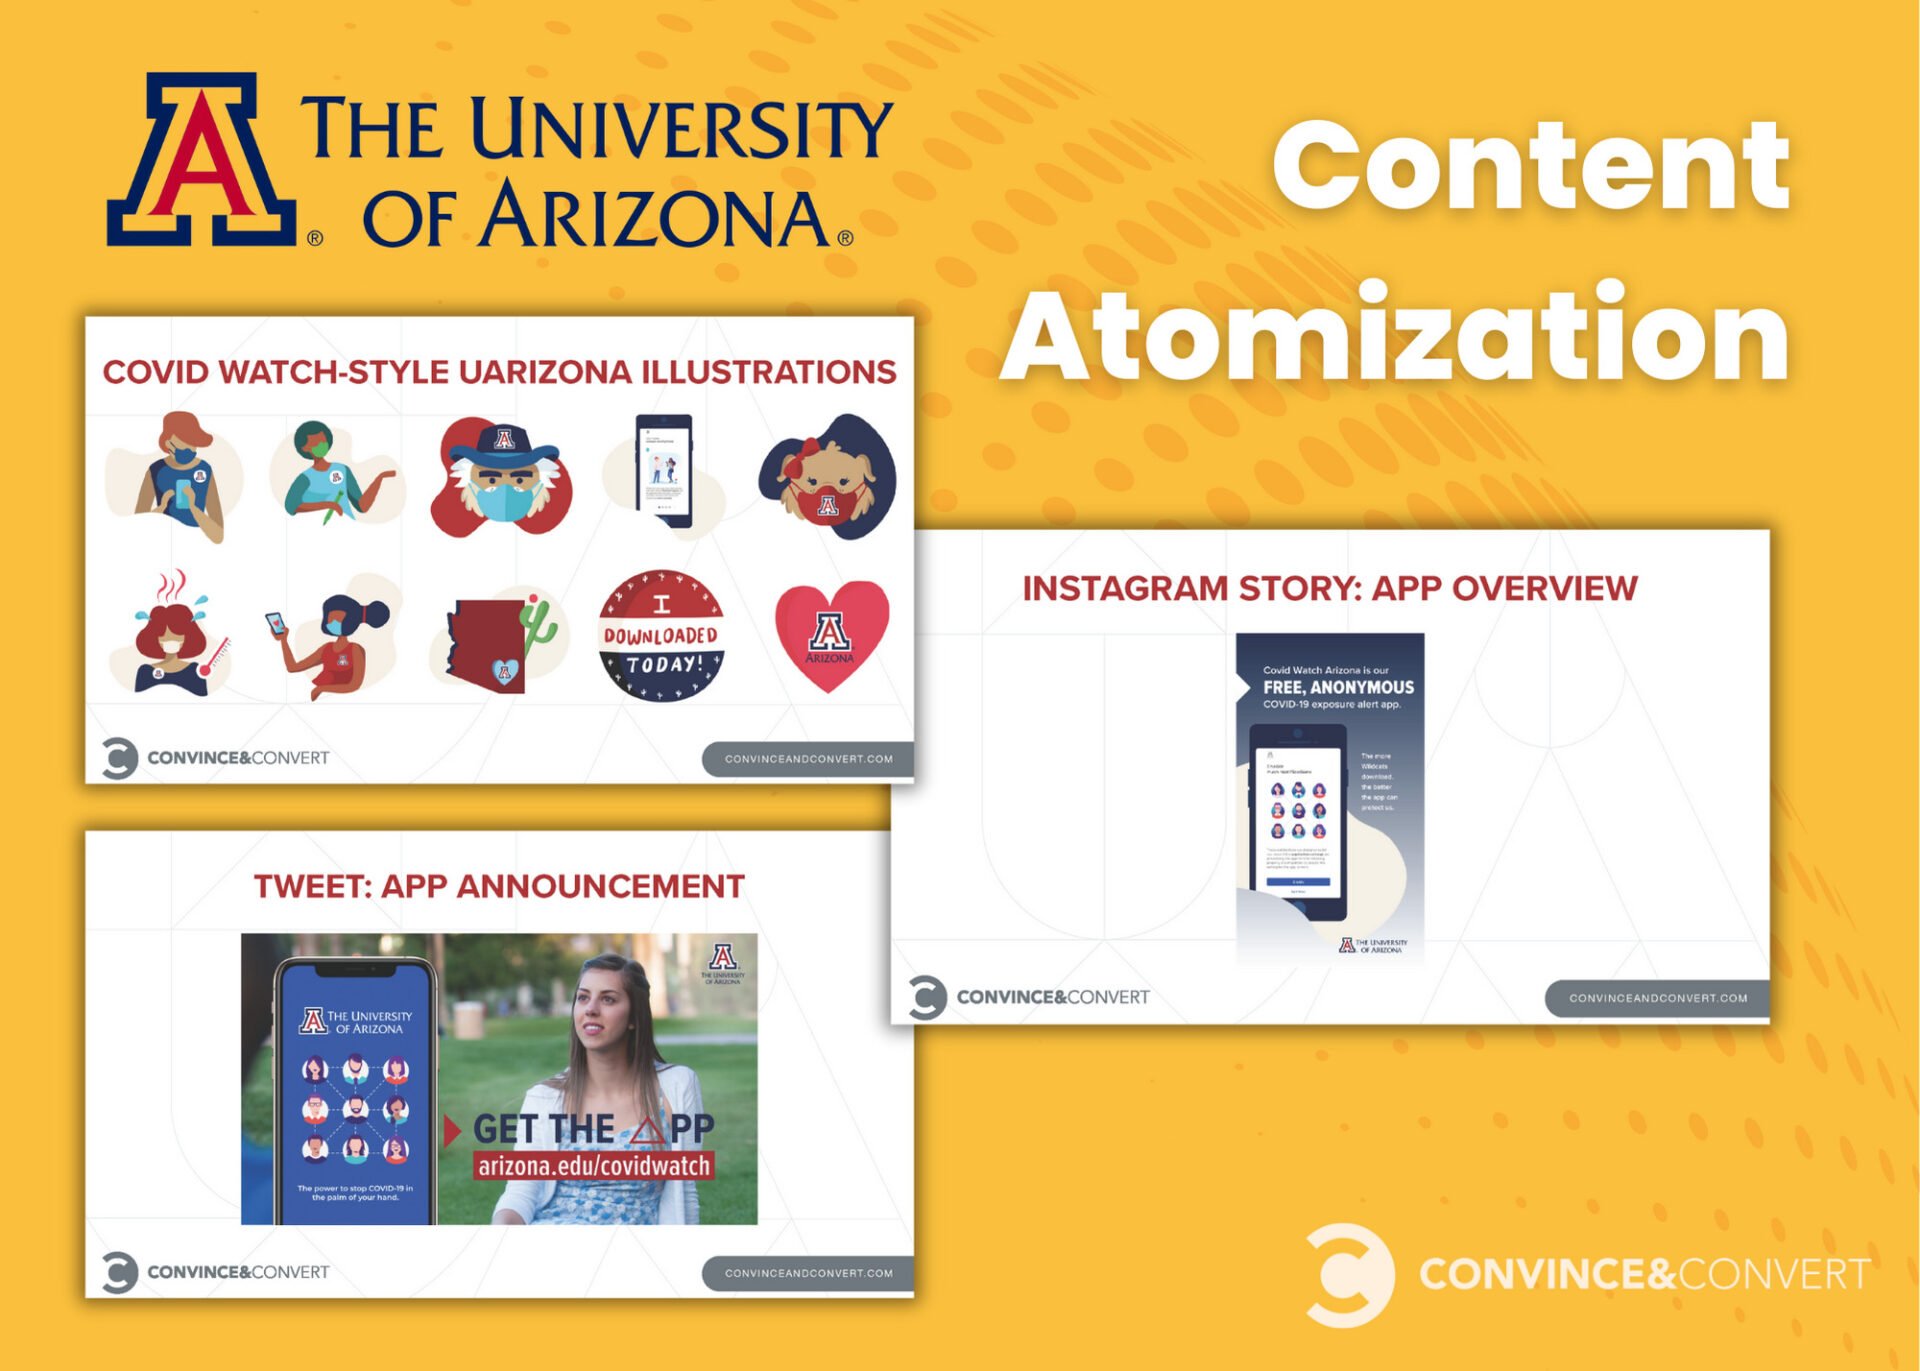 University of Arizona content atomization